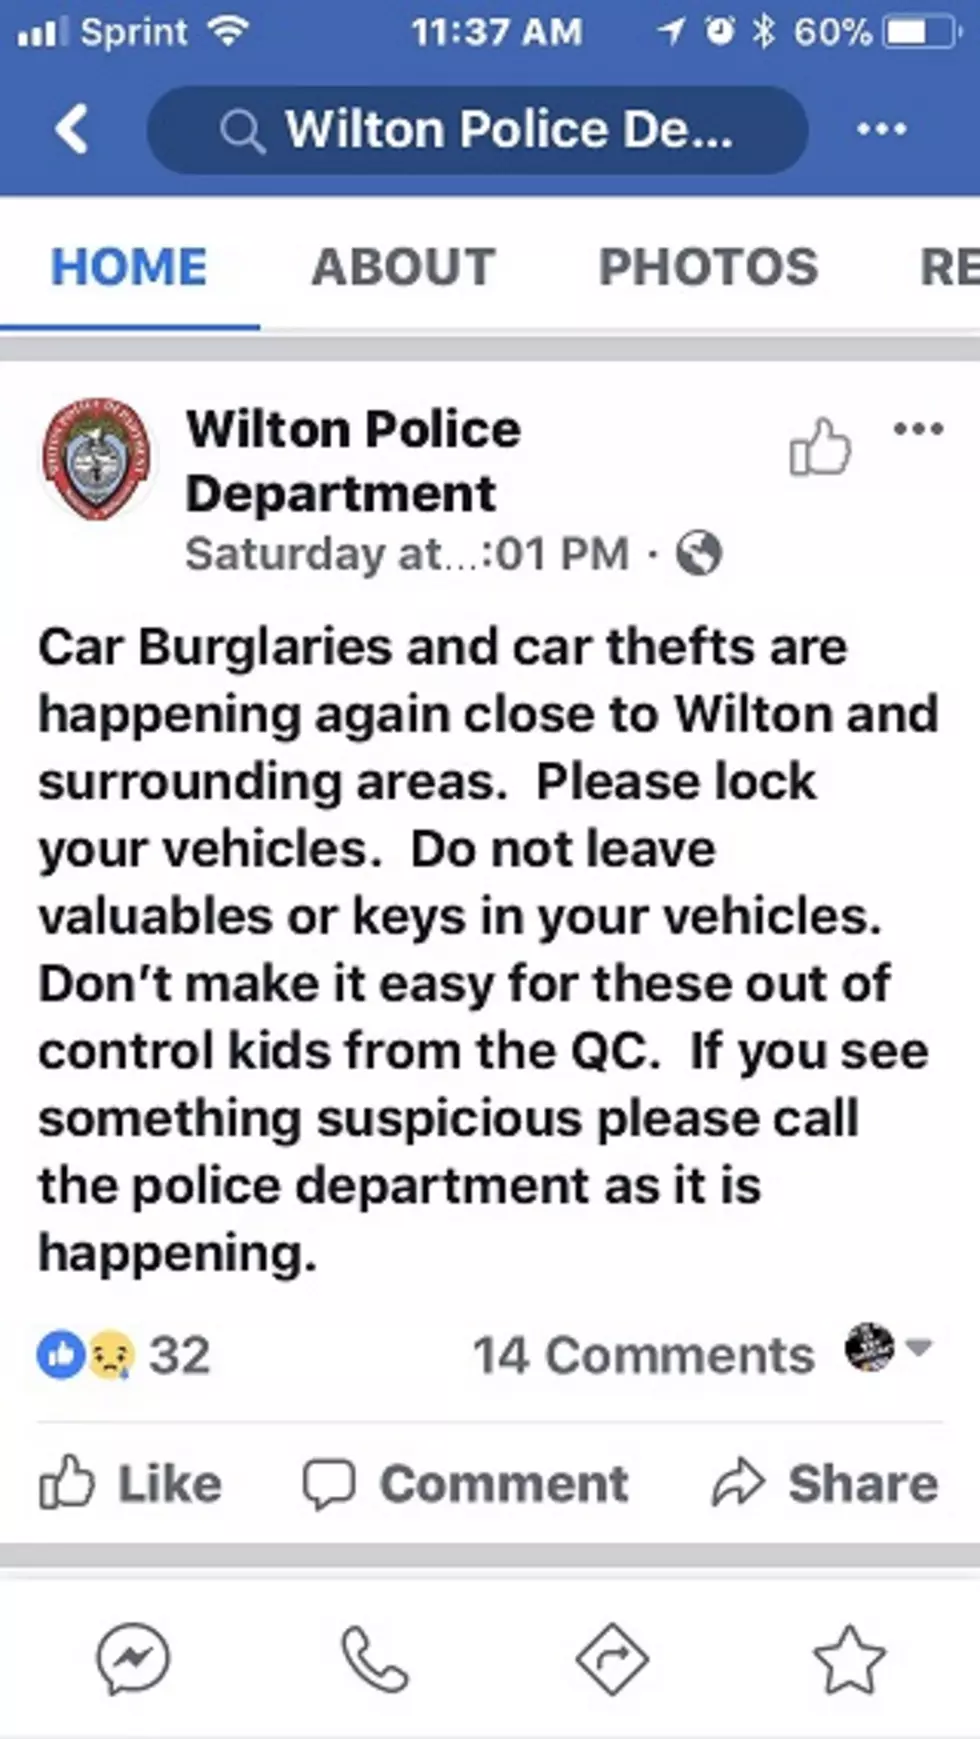 More Car Burglaries In The QCA